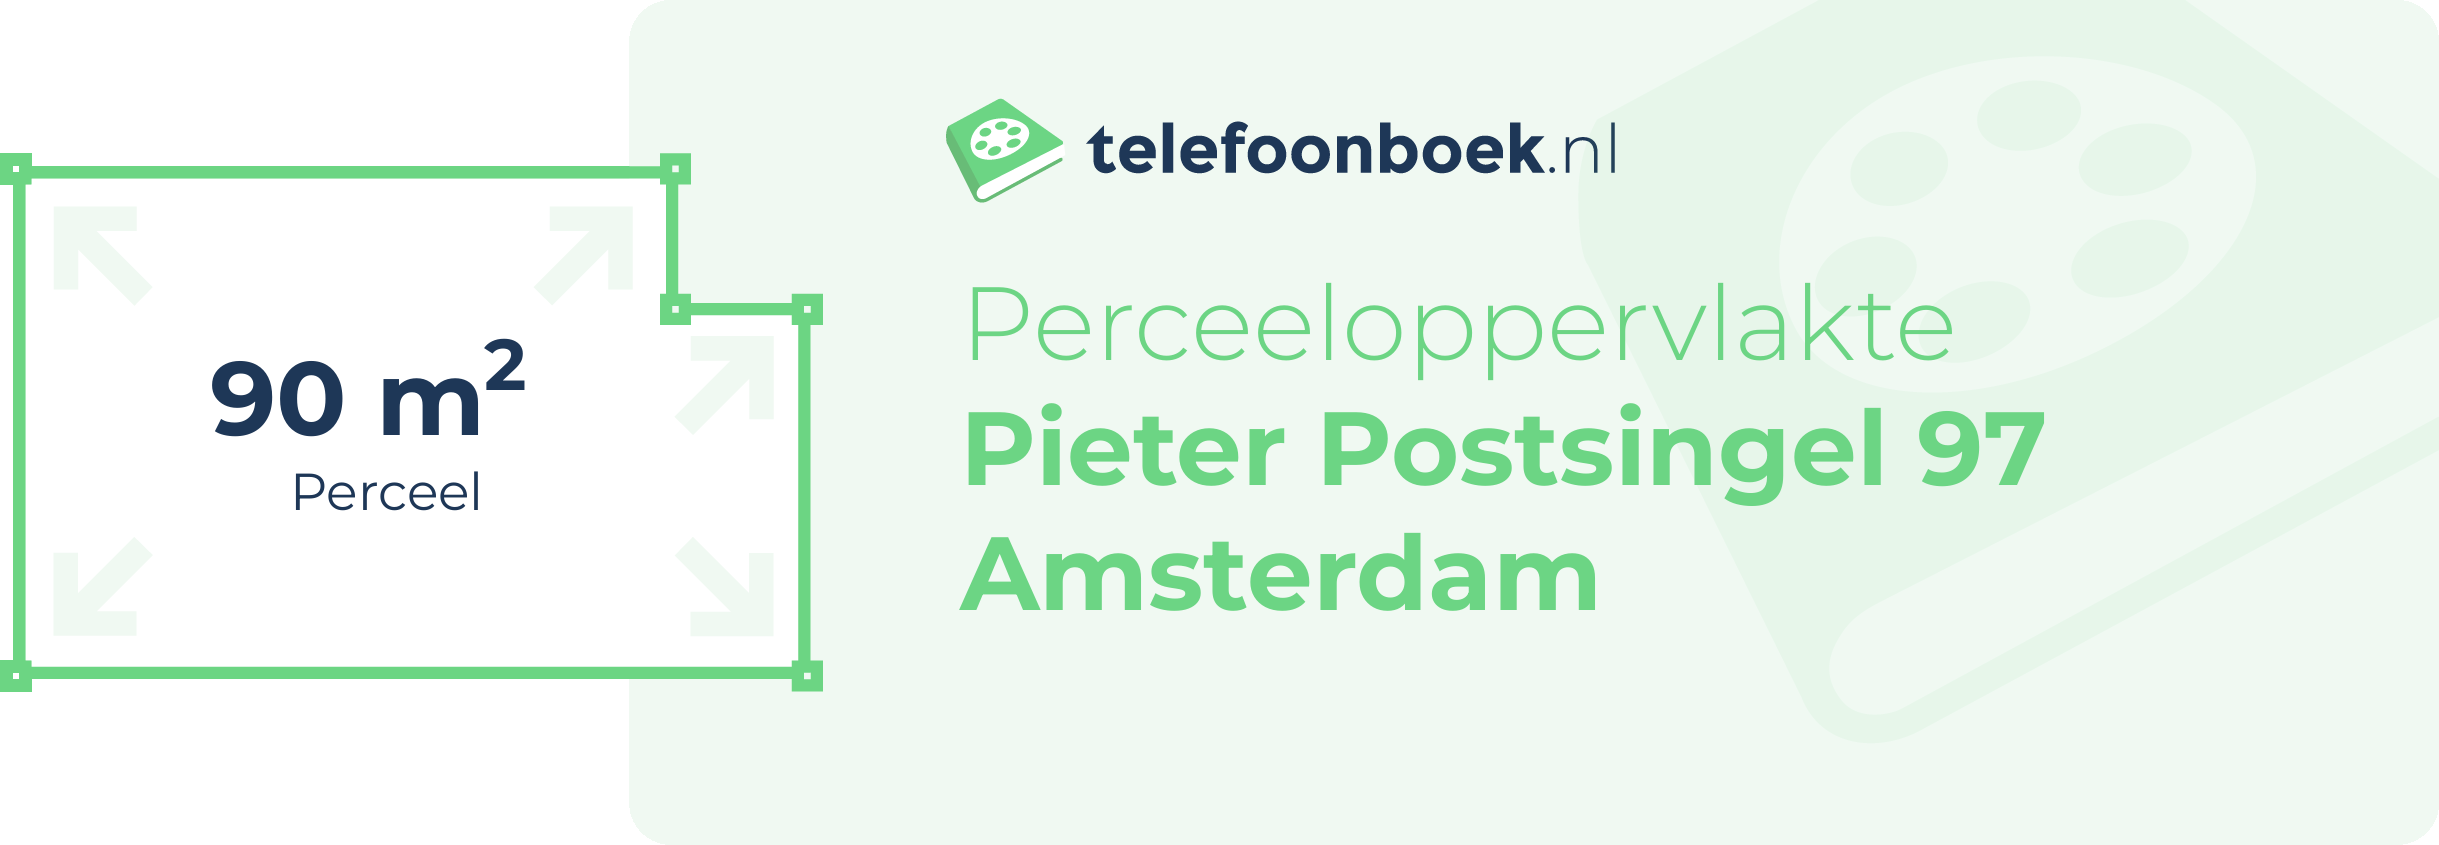 Perceeloppervlakte Pieter Postsingel 97 Amsterdam